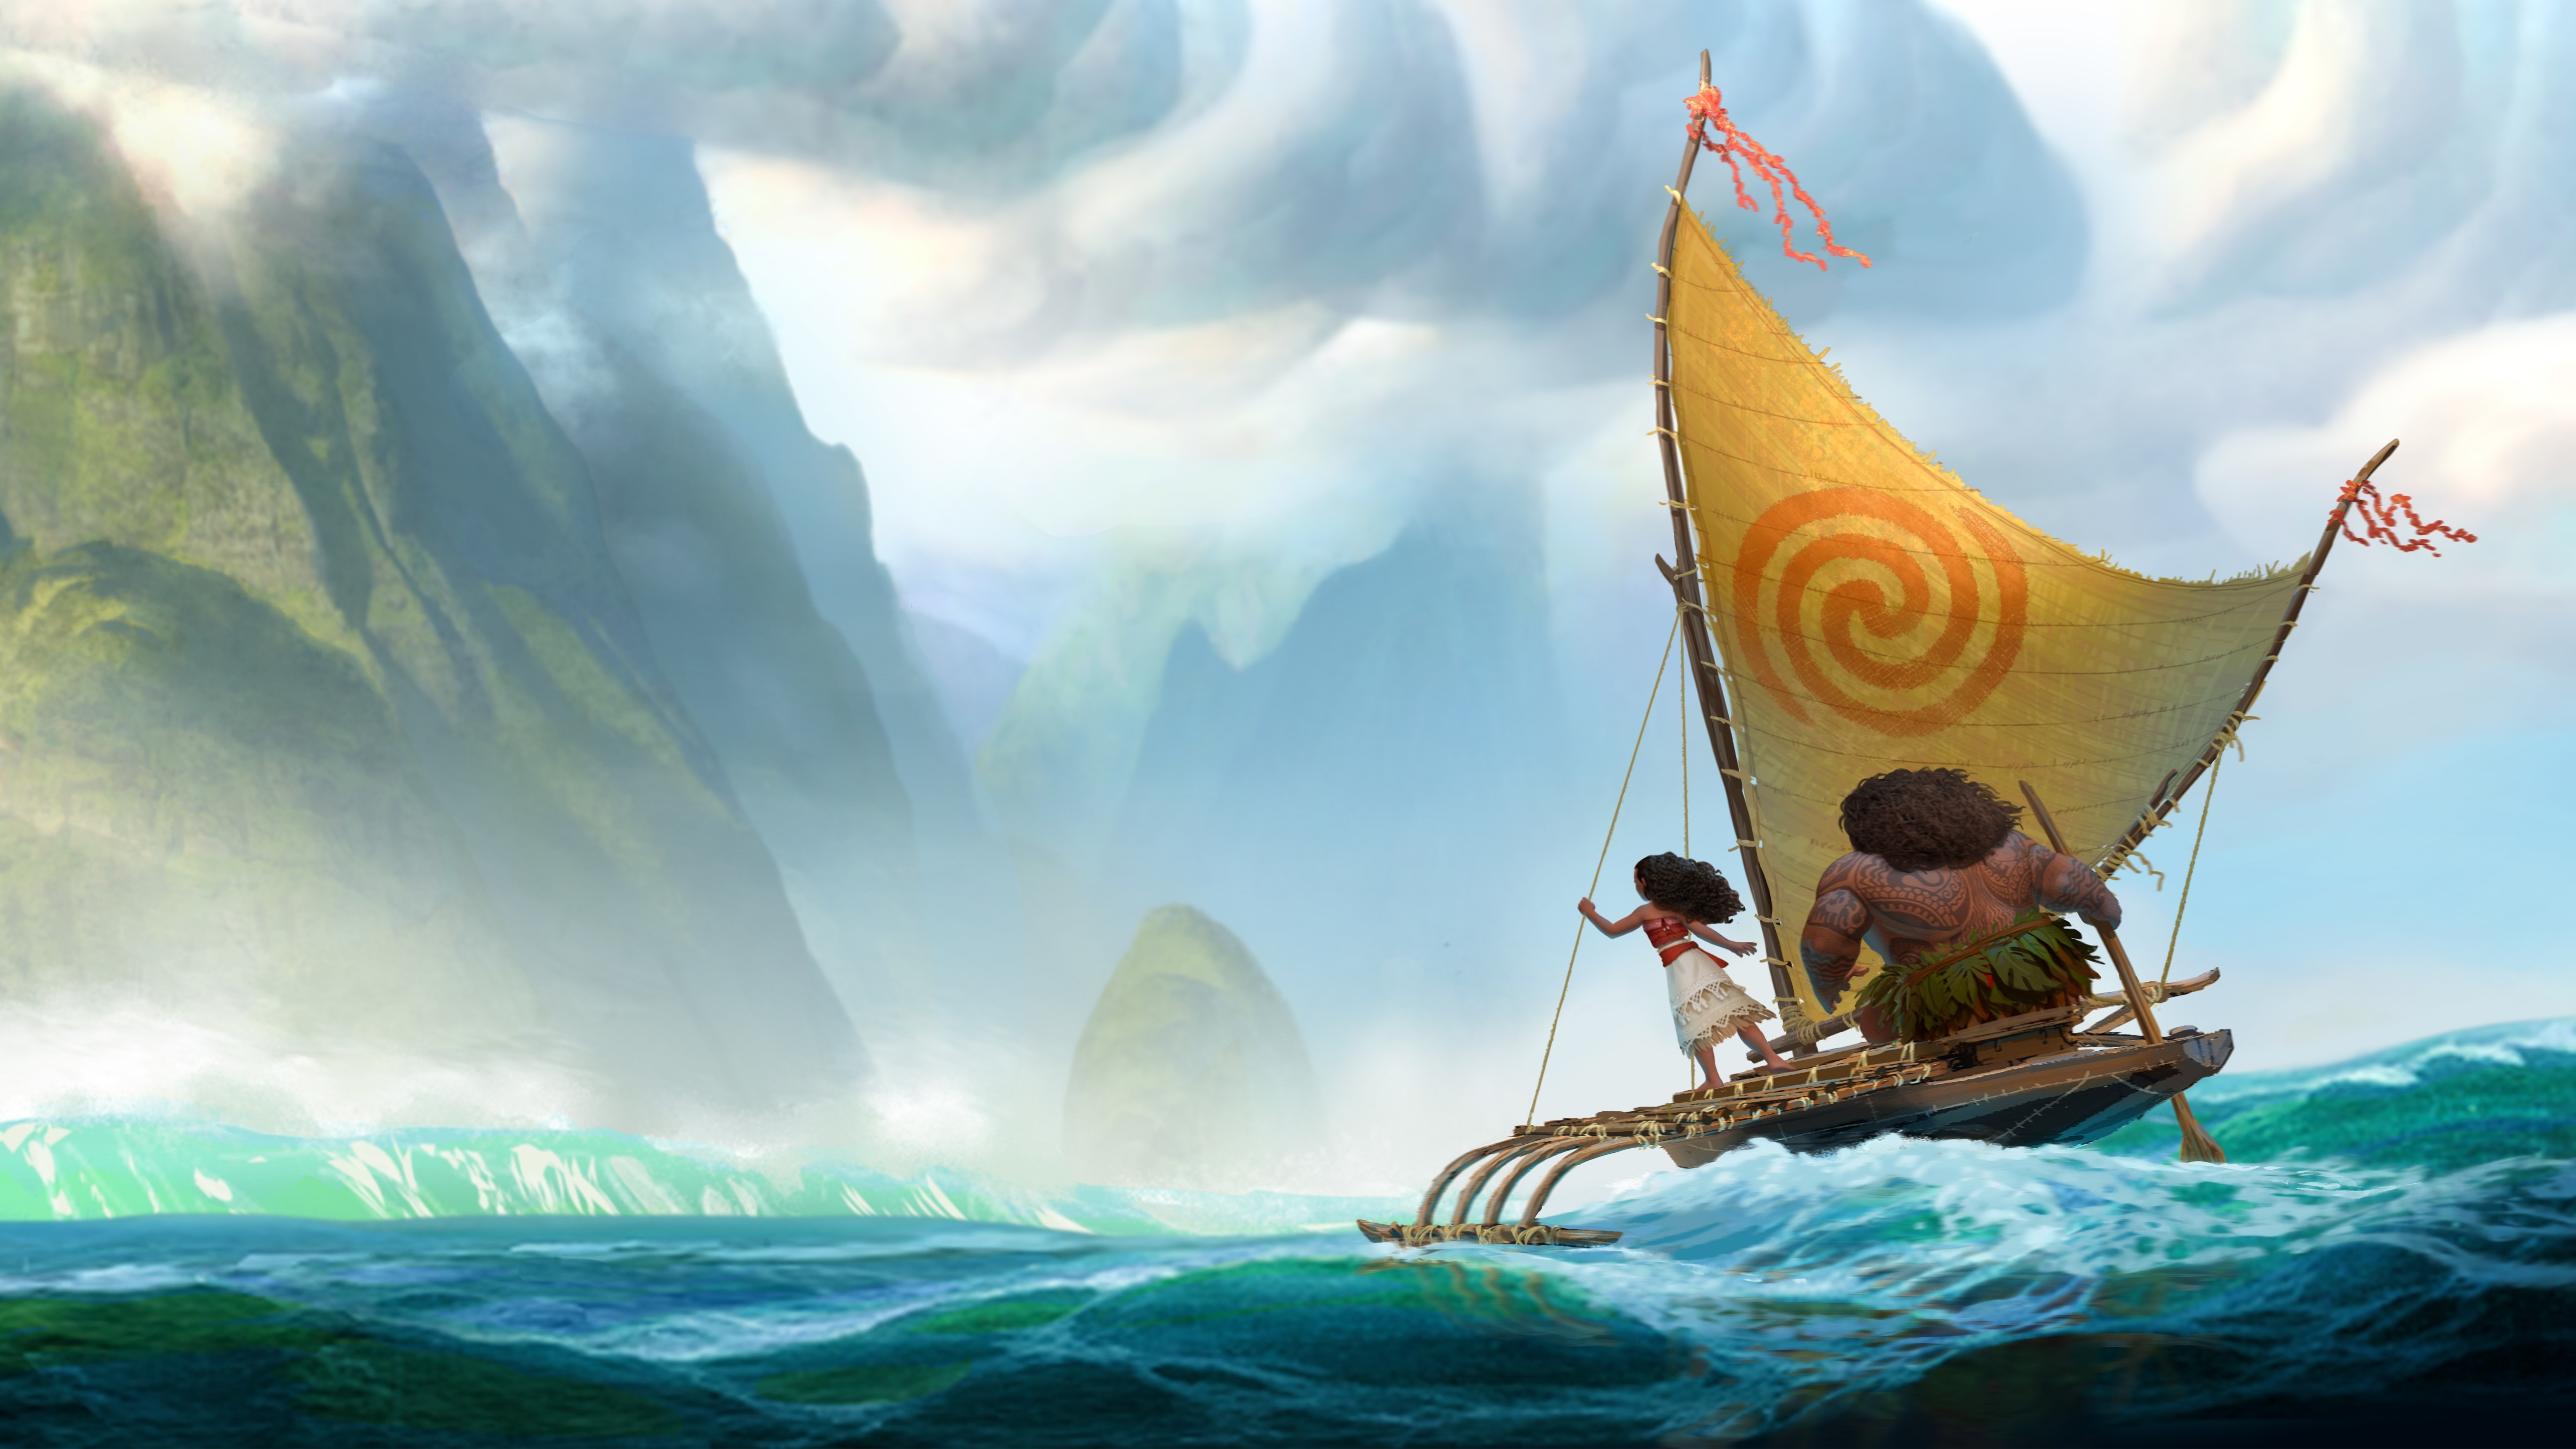 アニメーション映画の壁紙,ボート,バイキング船,車両,帆,船